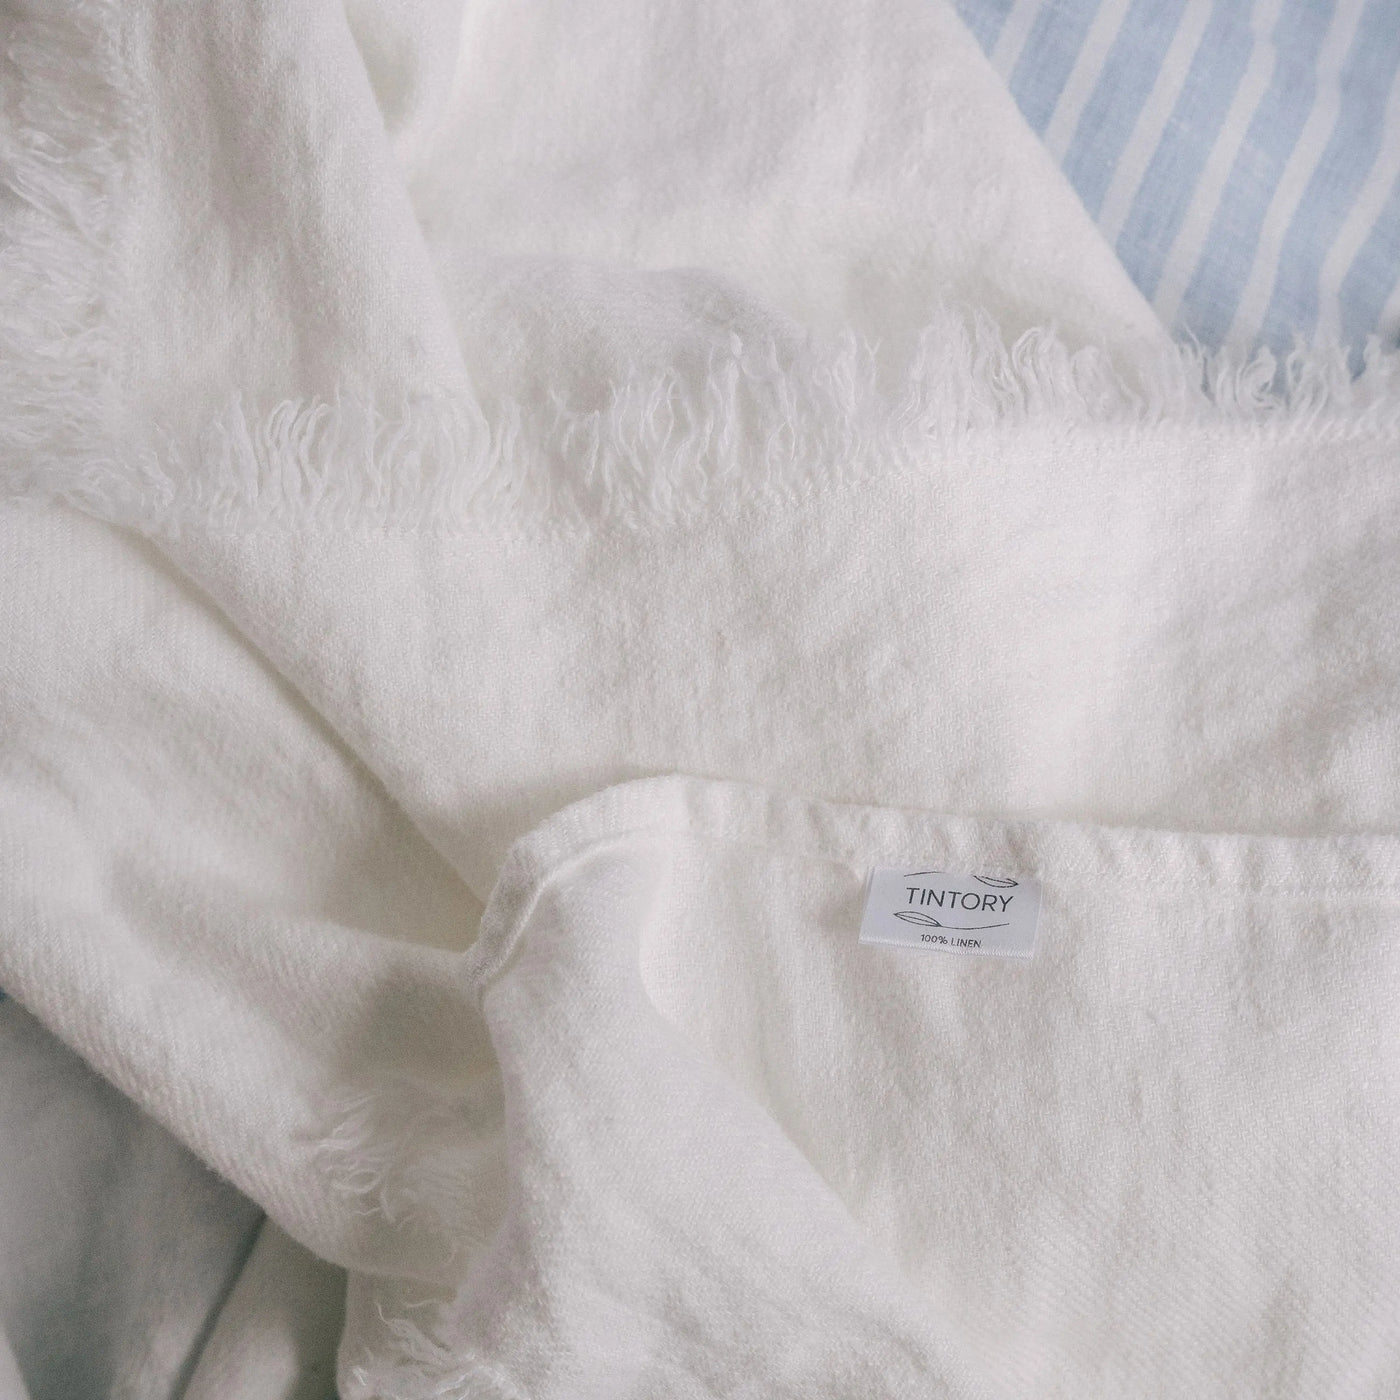 Acquistare online il set di asciugamani da bagno in 100% lino 2 pezzi in colore bianco